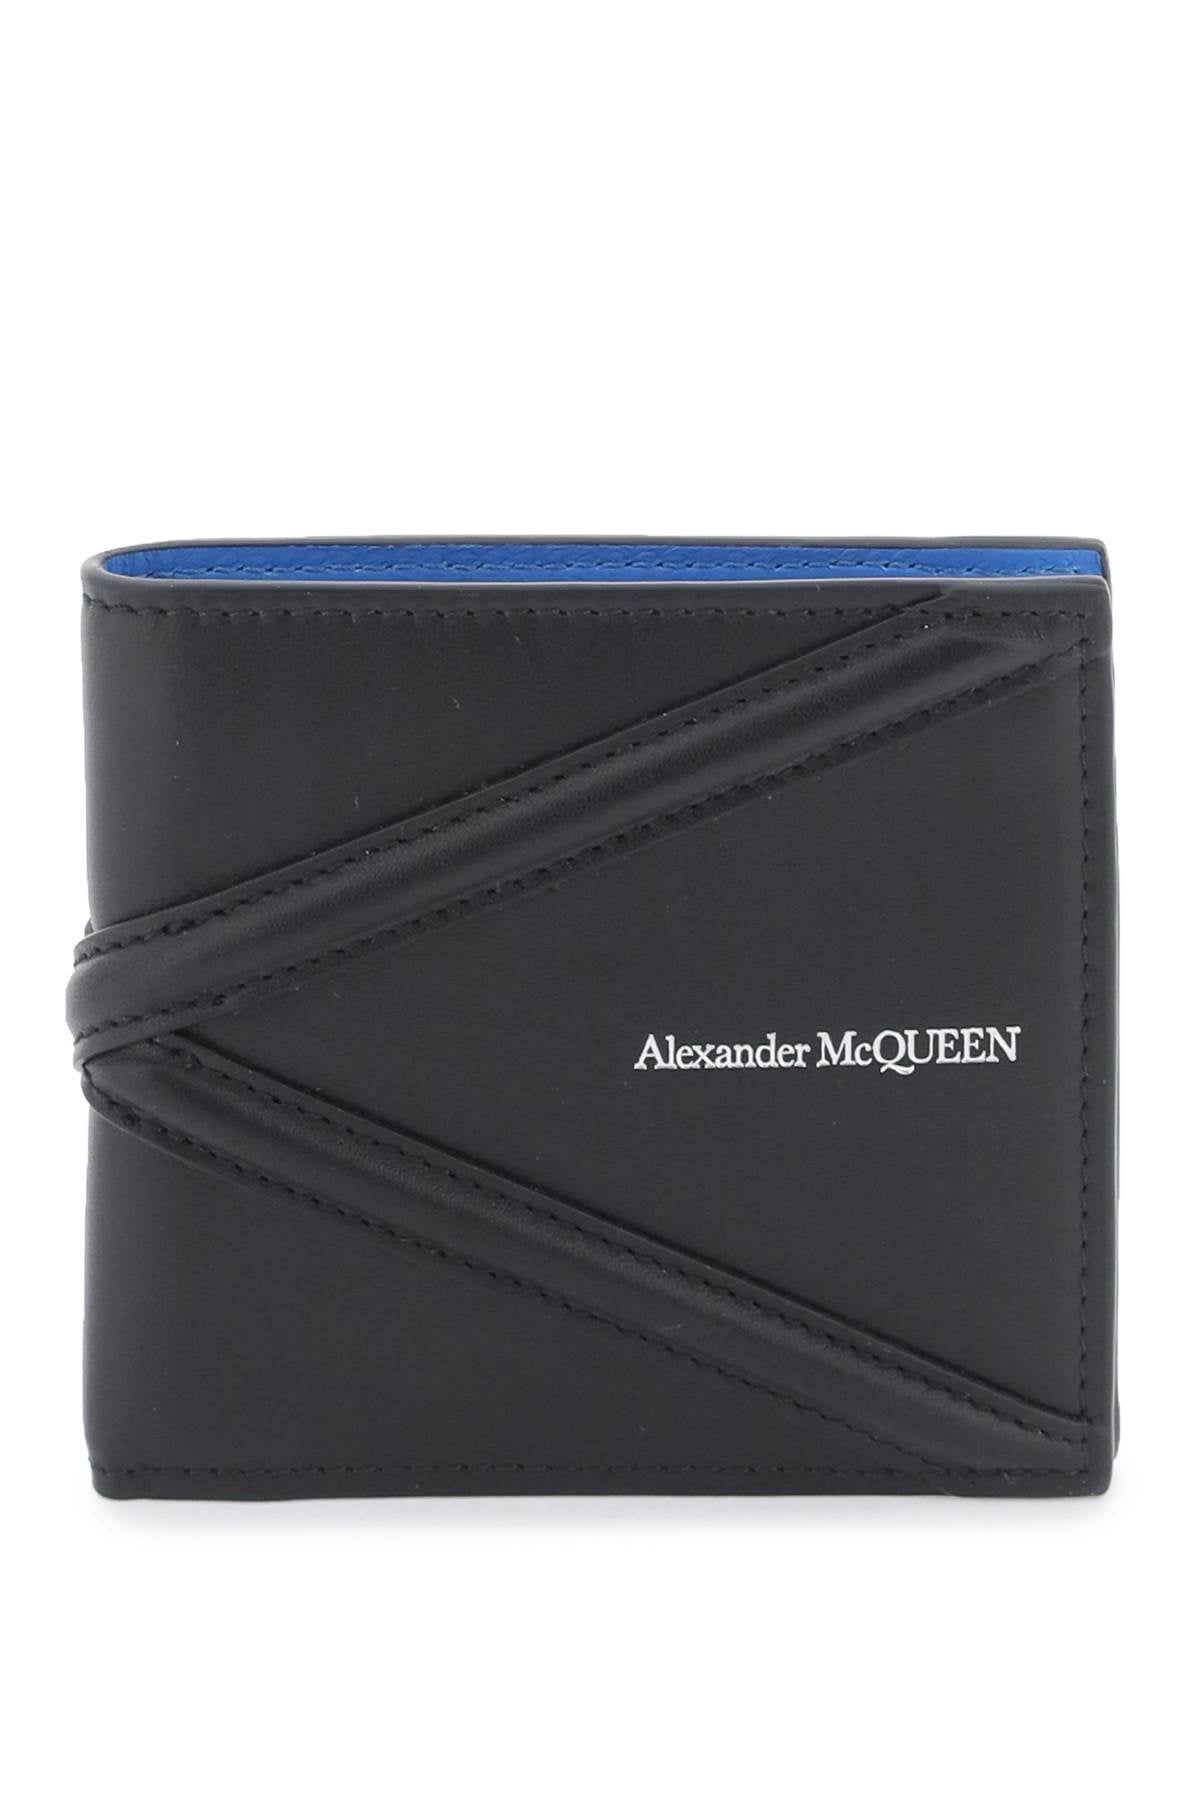 Alexander Mcqueen Alexander mcqueen harness bifold wallet